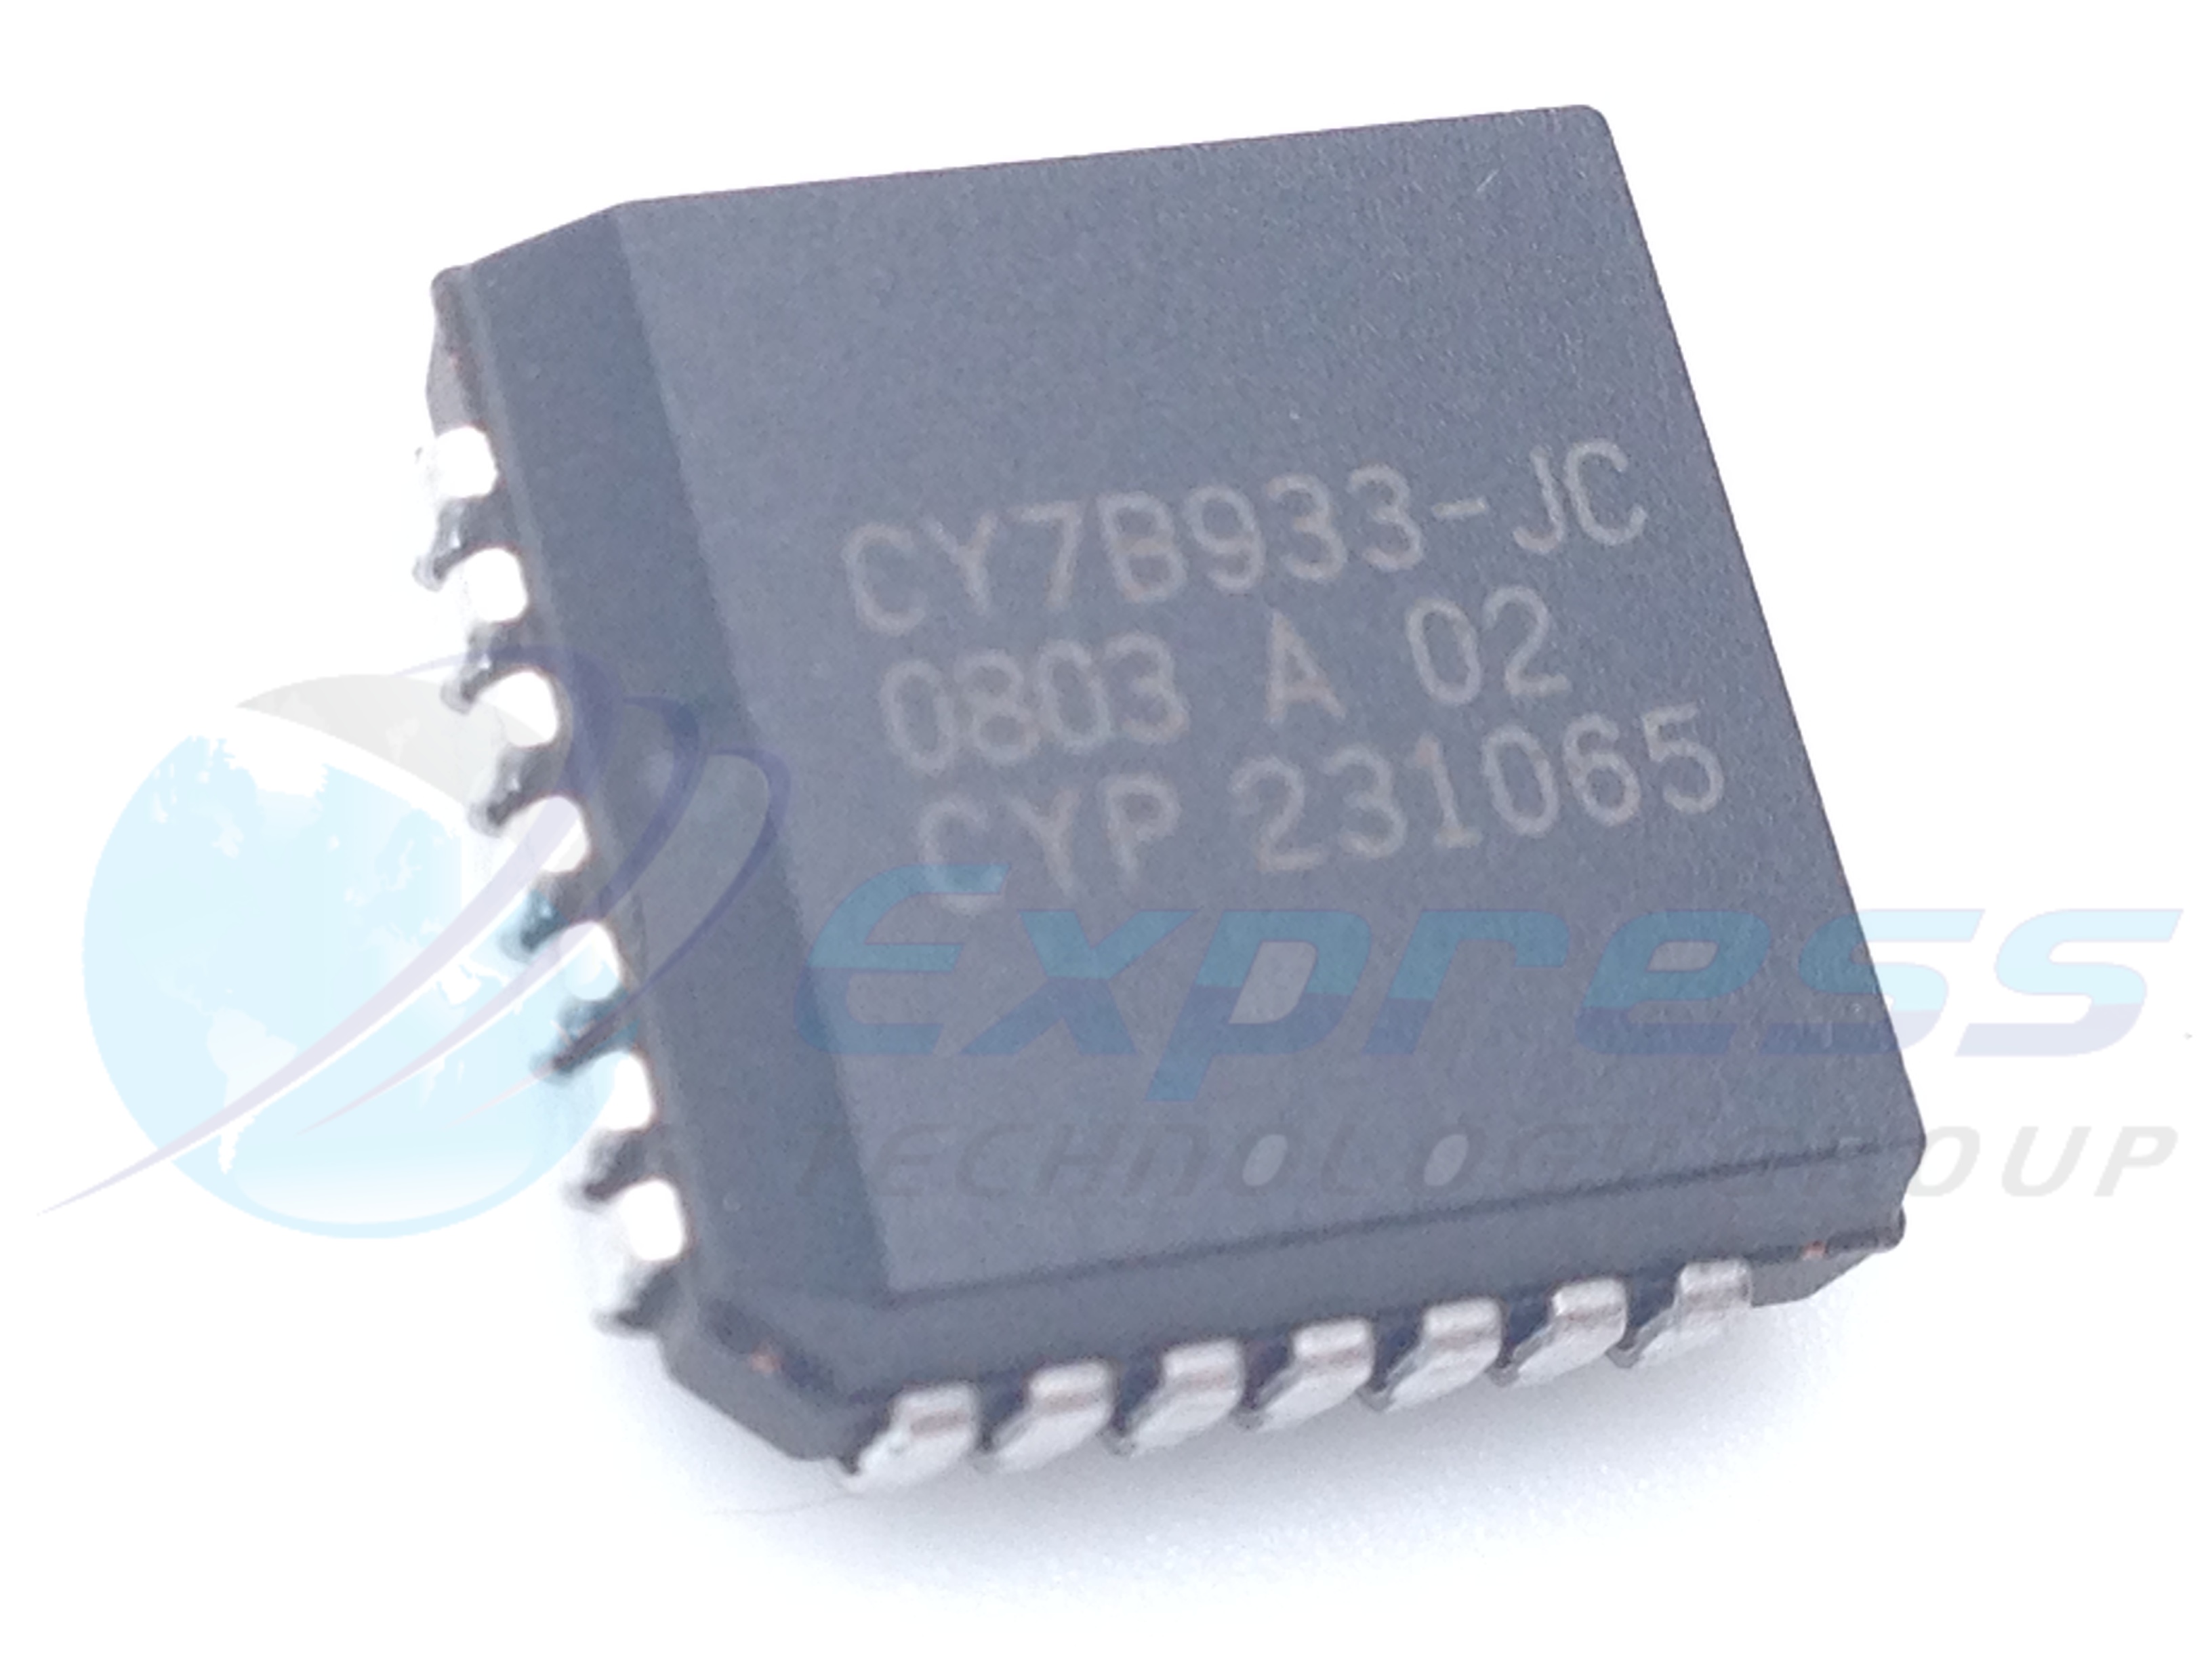 CY7B933-JC